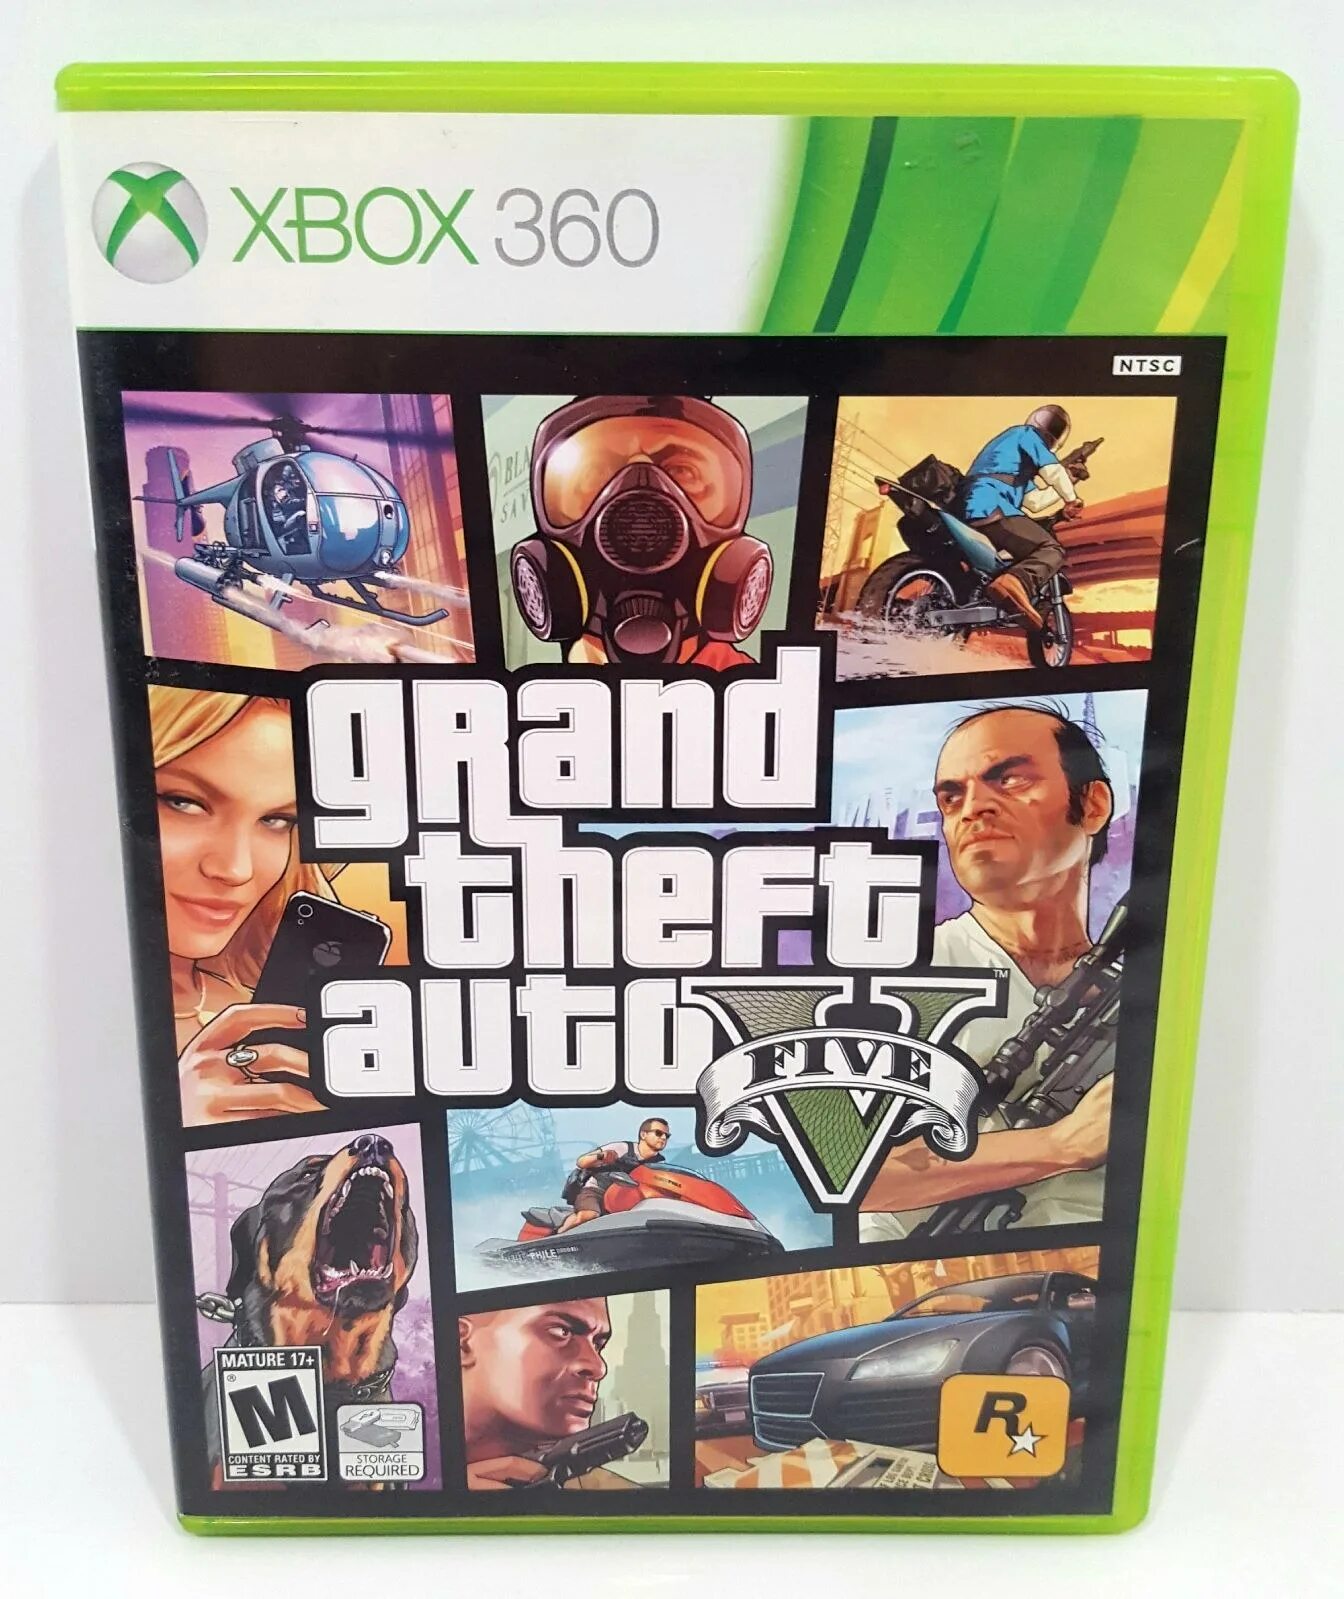 Диск GTA V Xbox 360. GTA 5 Xbox 360 диск. Grand Theft auto v (Xbox 360). GTA 5 на Икс бокс 360. Игра xbox 360 gta